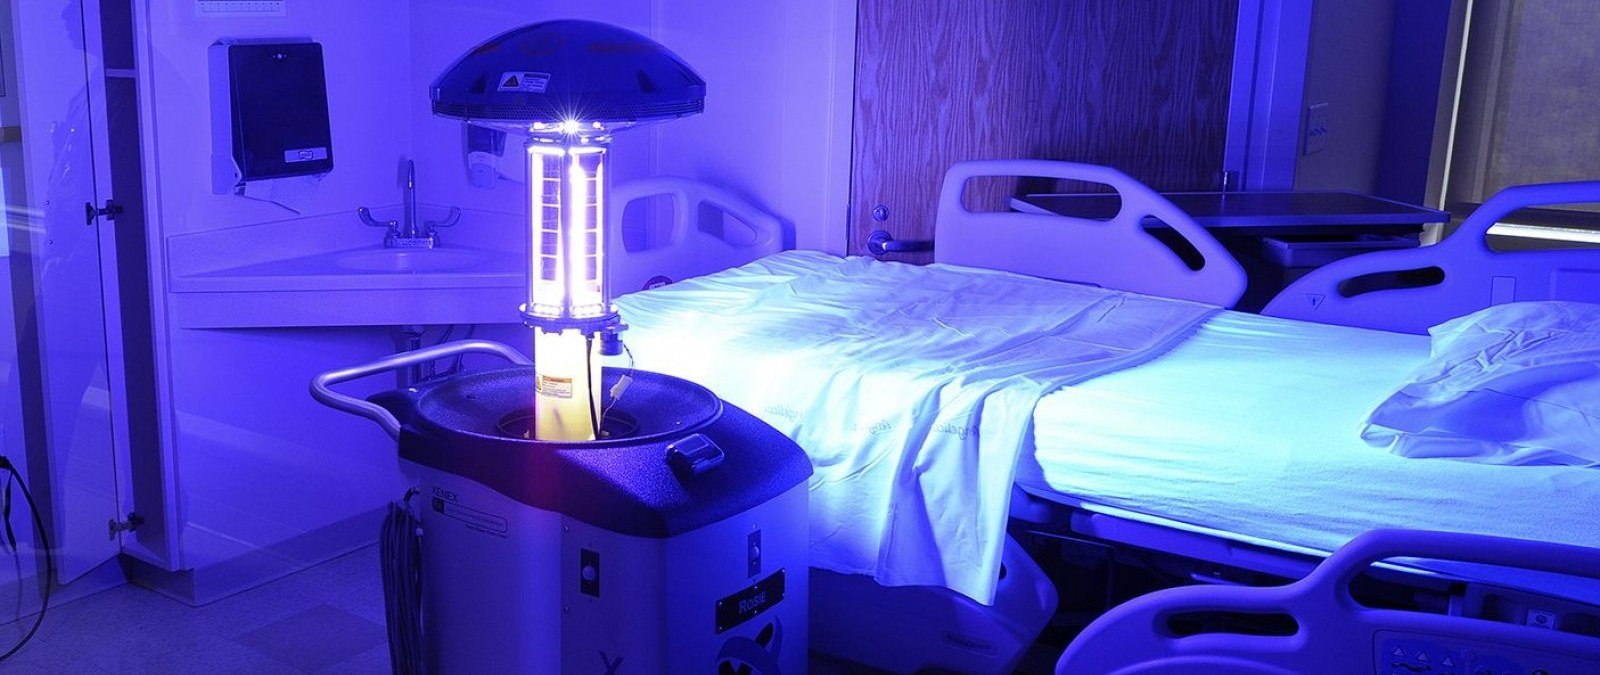 Qué sabemos sobre el uso de lámparas ultravioleta como método desinfectante frente al coronavirus - Maldita.es